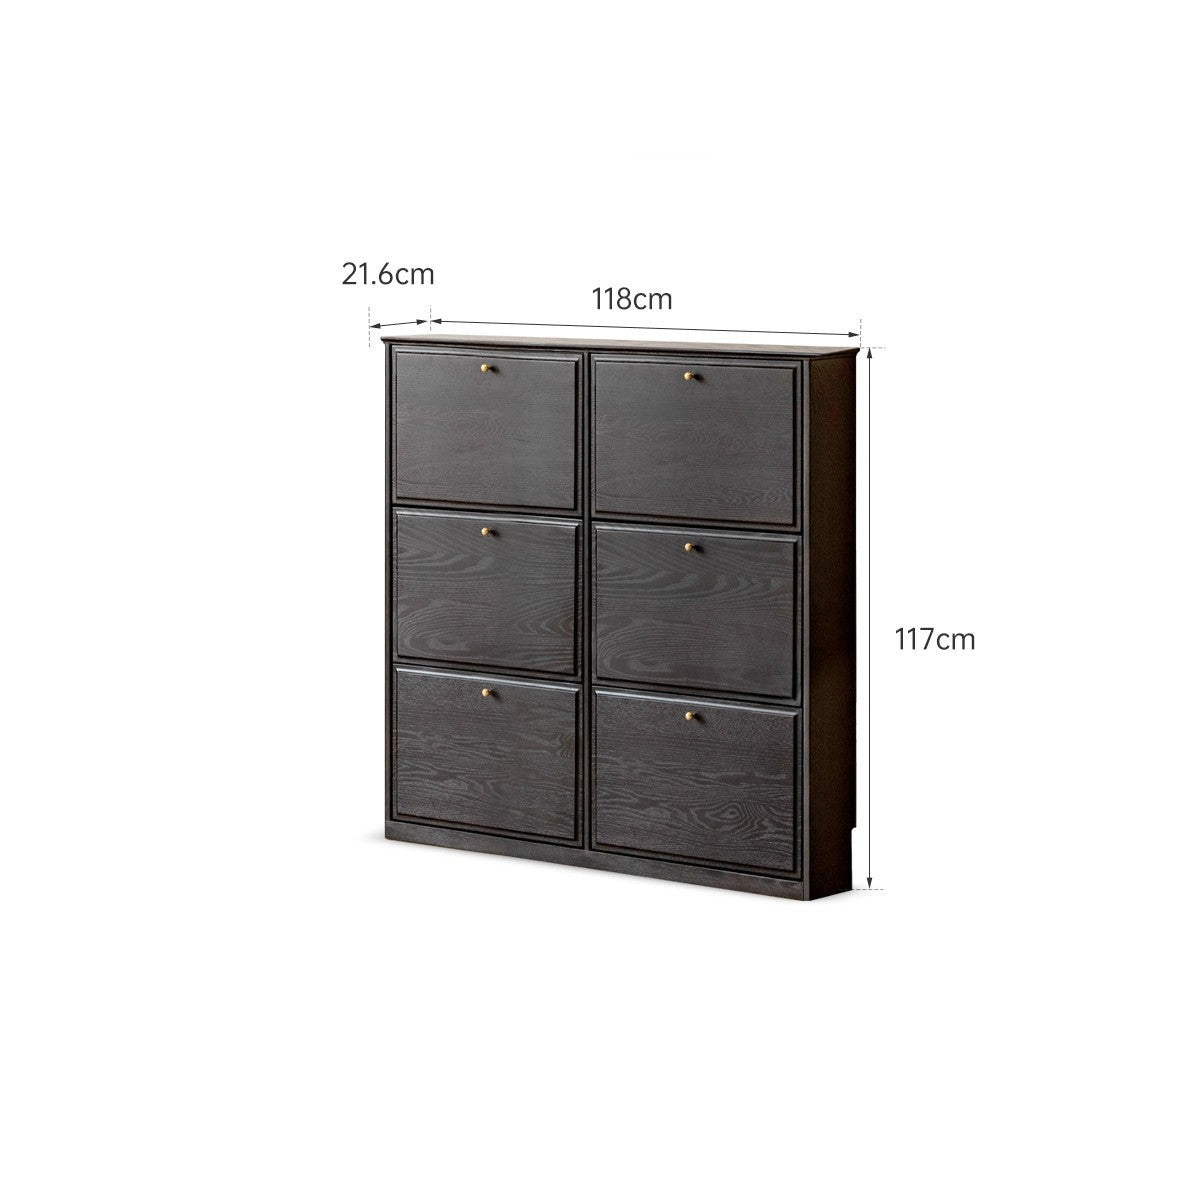 Oak solid wood American retro black narrow shoe cabinet door entrance cabinet -